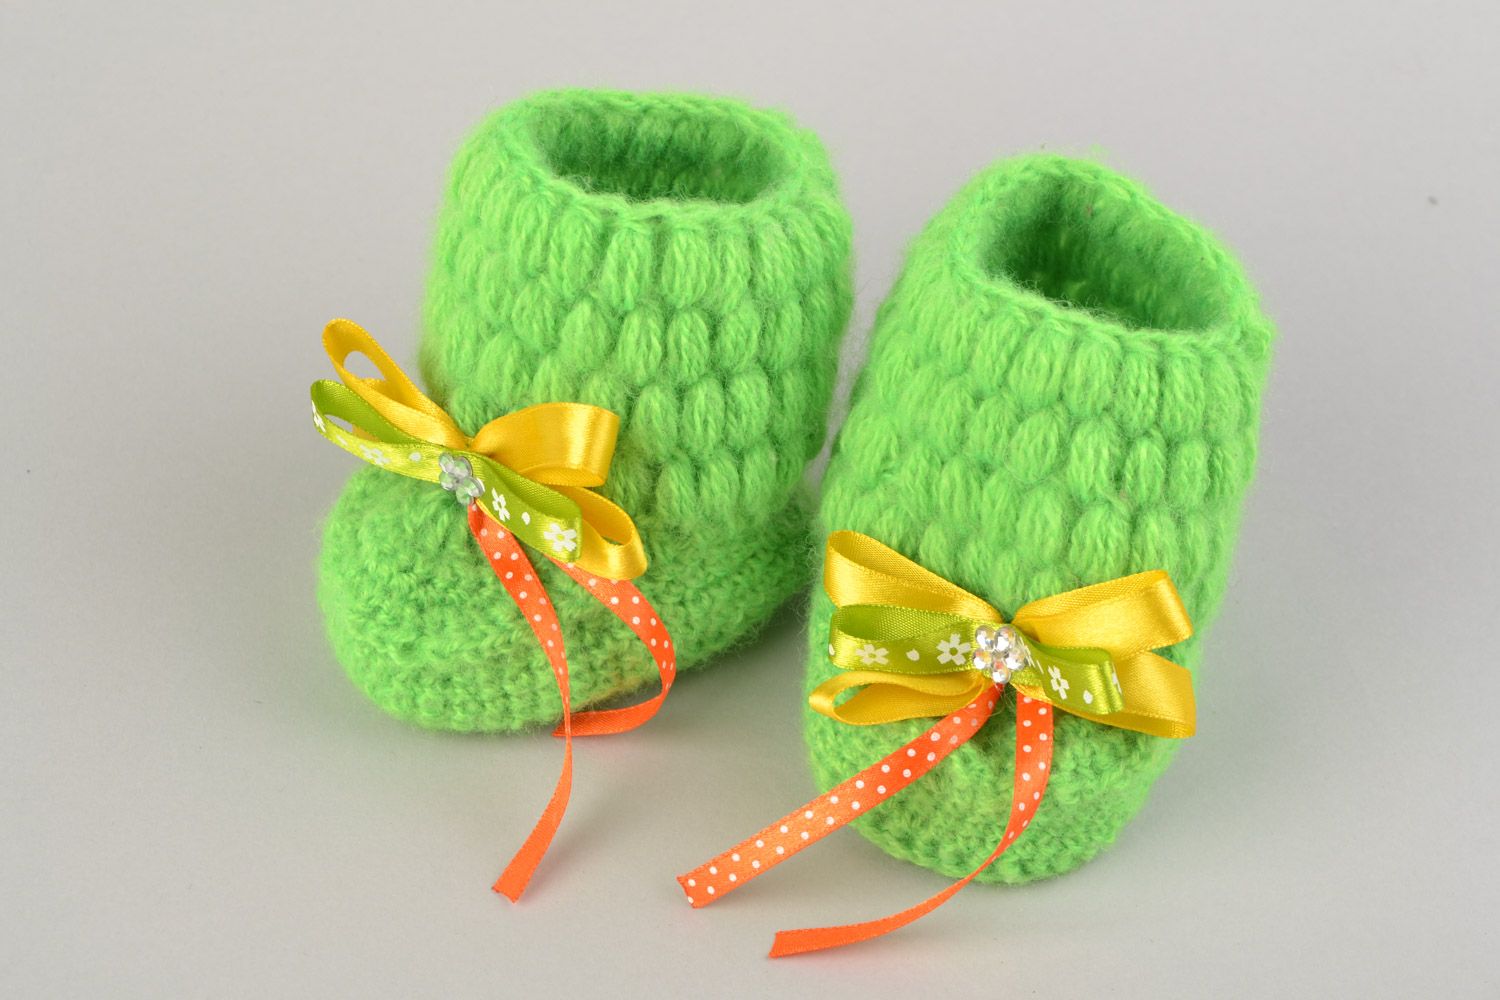 Petits chaussons tricotés pour bébé chauds verts avec noeuds jaunes faits main photo 4